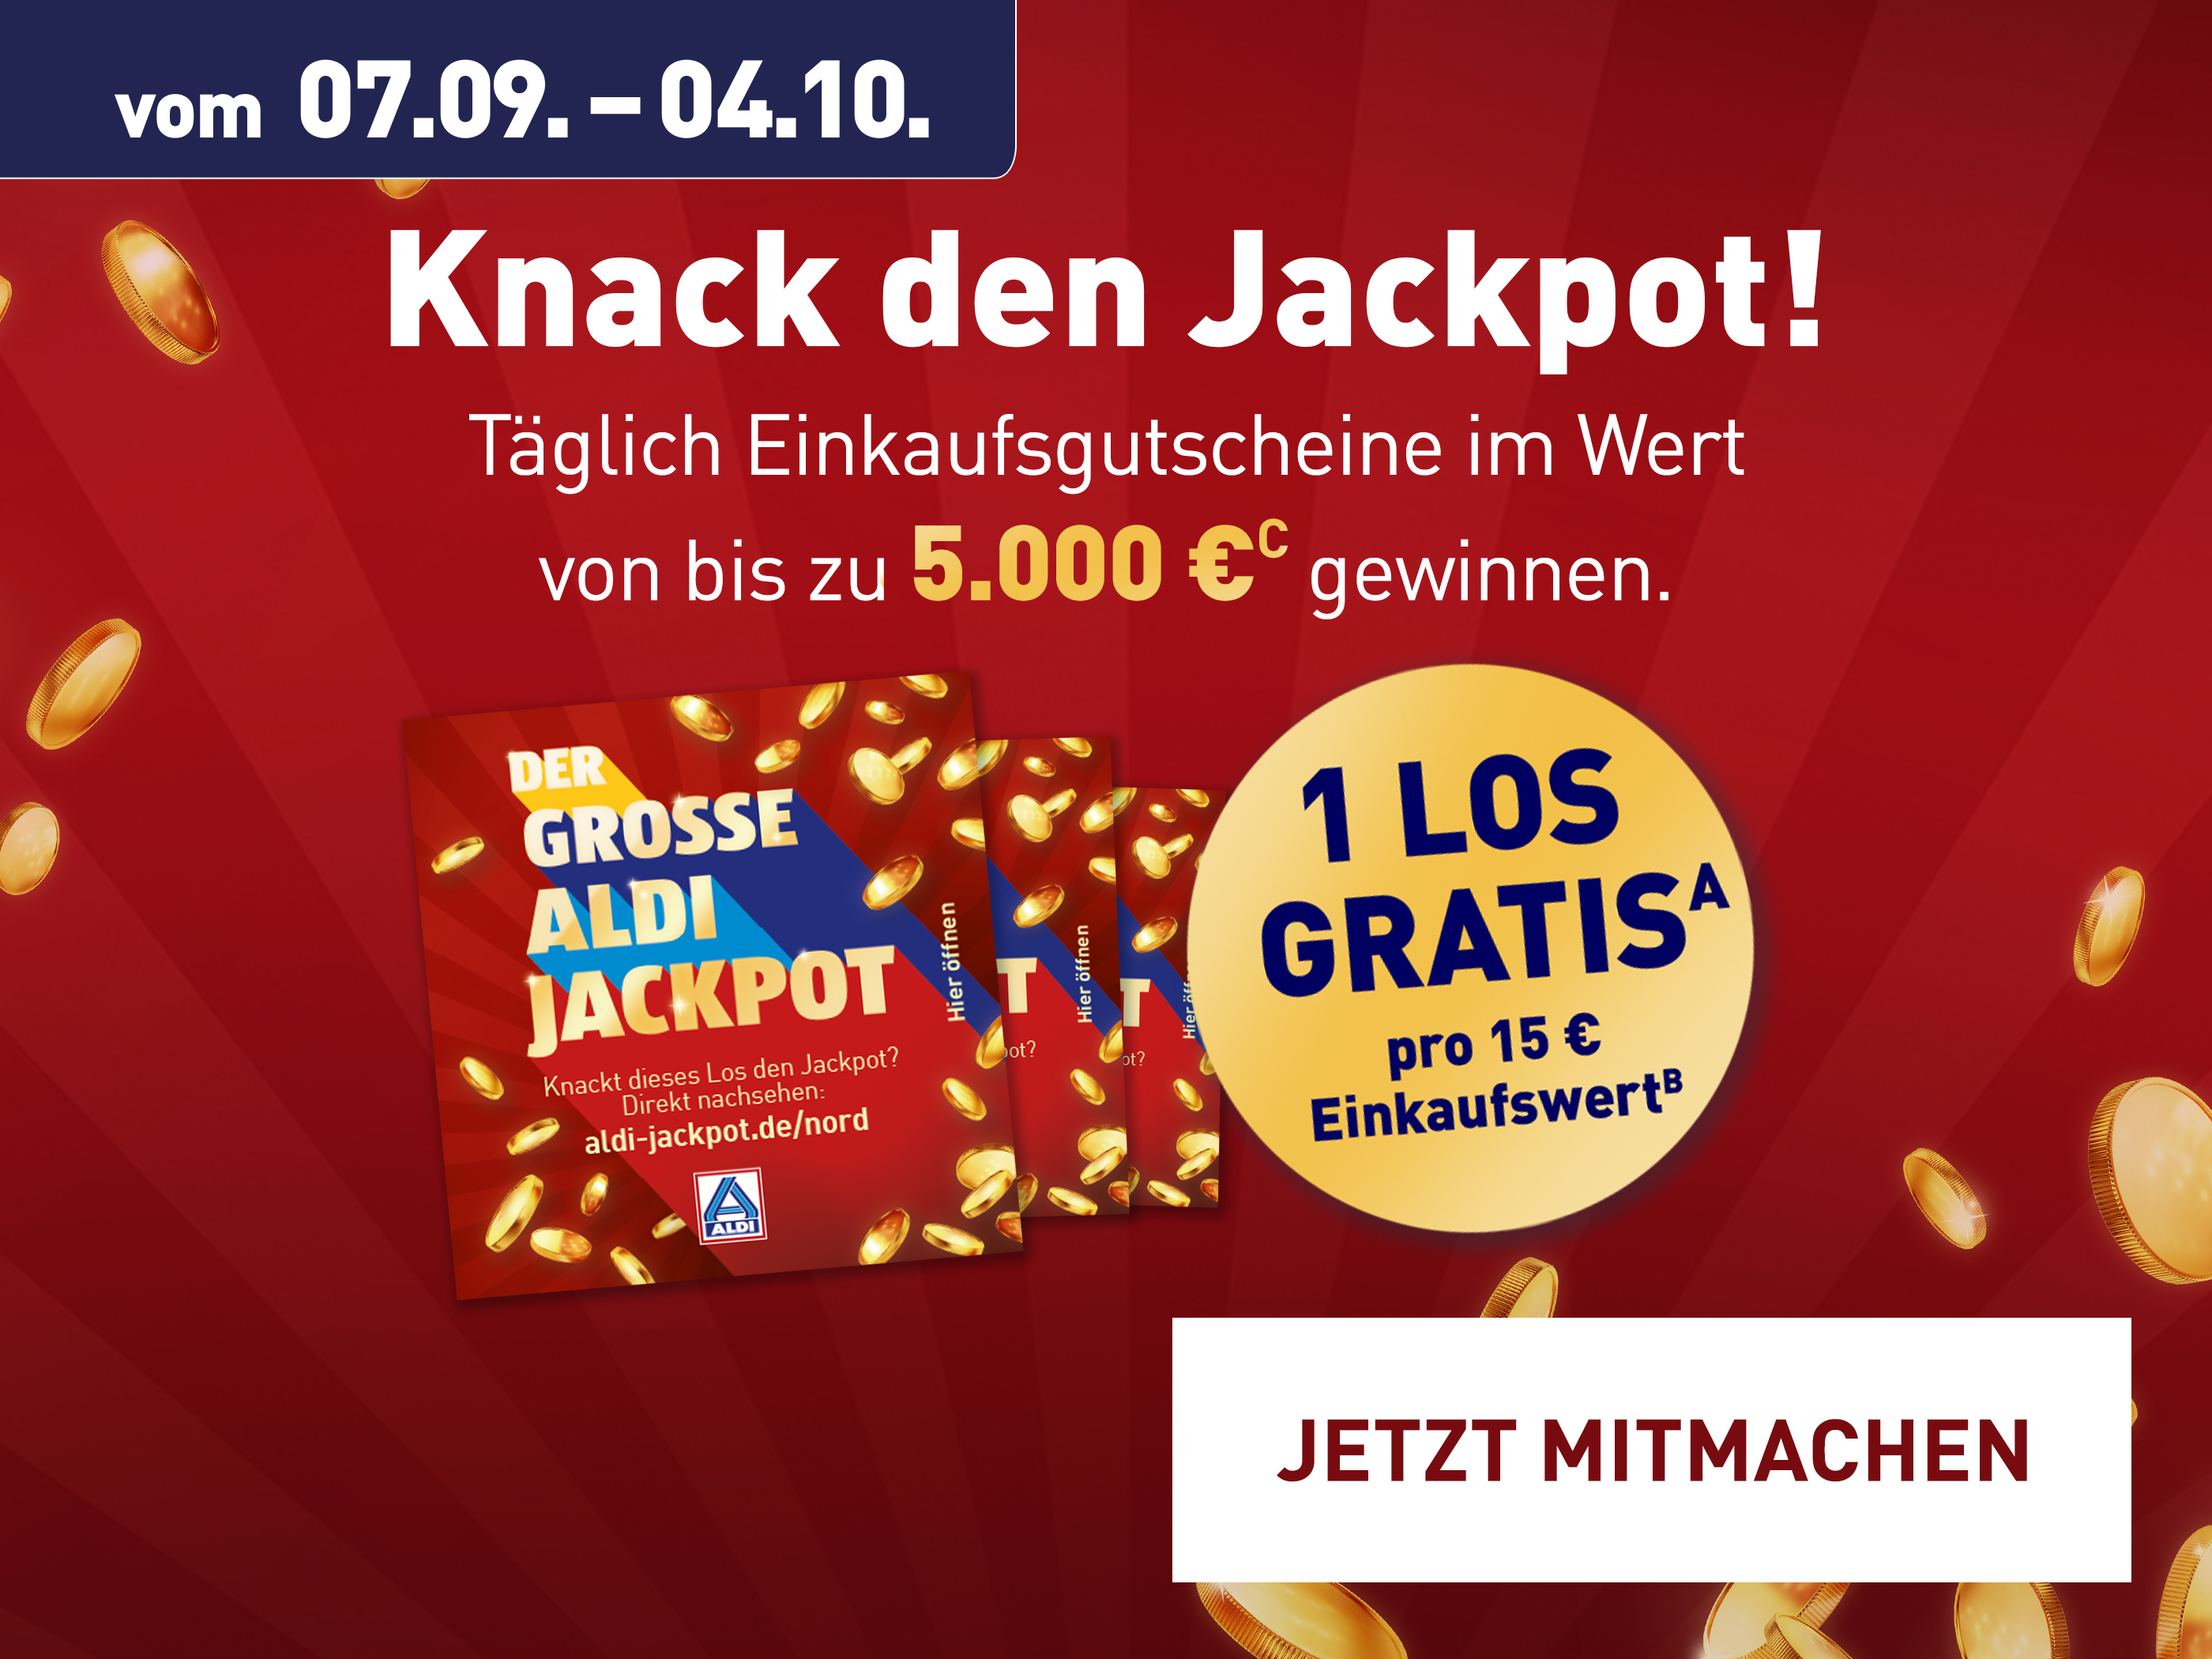 Lose des großen ALDI Jackpots und der Hinweis "1 Los gratis pro 15 € Einkaufswert" – Versuche dein Glück und knack den Jackpot